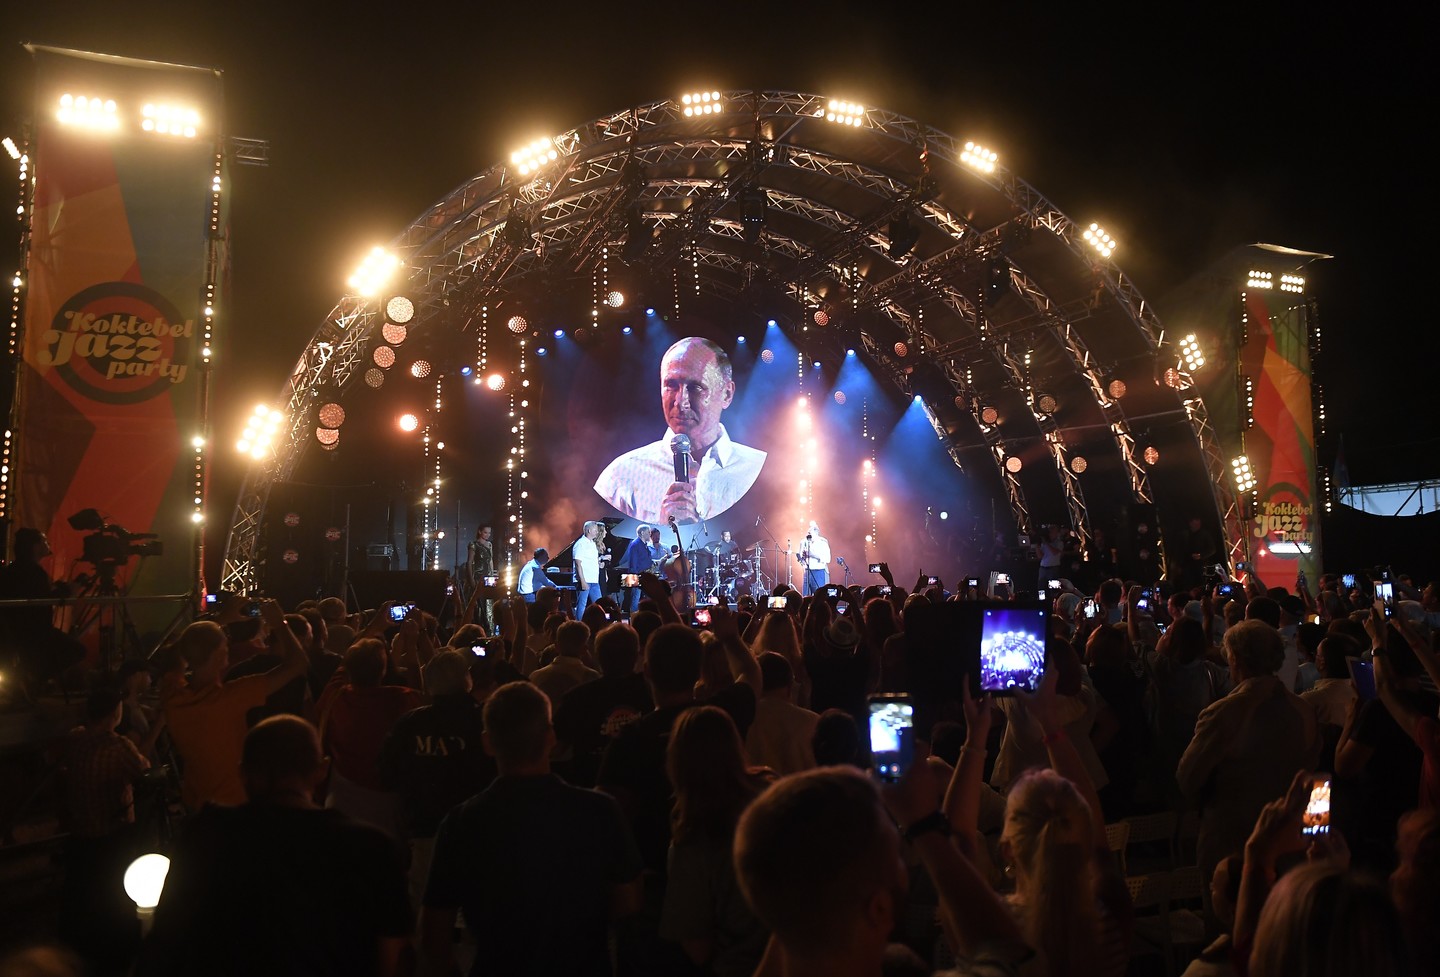 Путин сразил гостей Koktebel Jazz Party, неожиданно появившись на фестивале